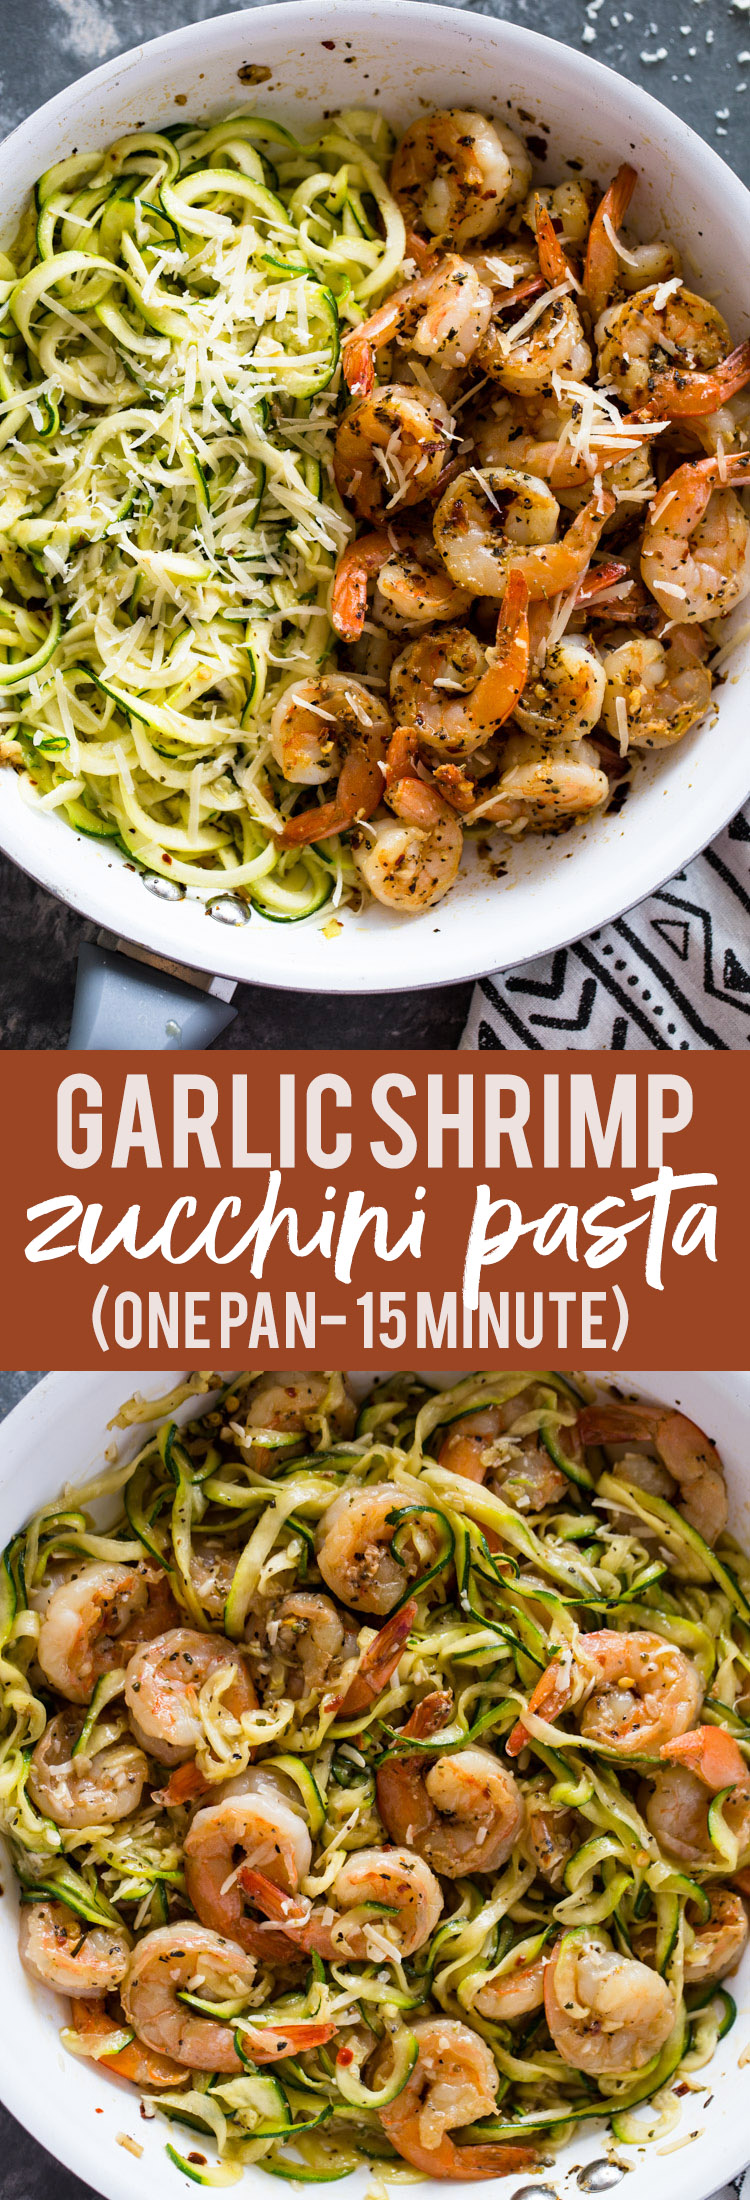 15 minute Garlic Shrimp Zucchini Pasta (One Pan)